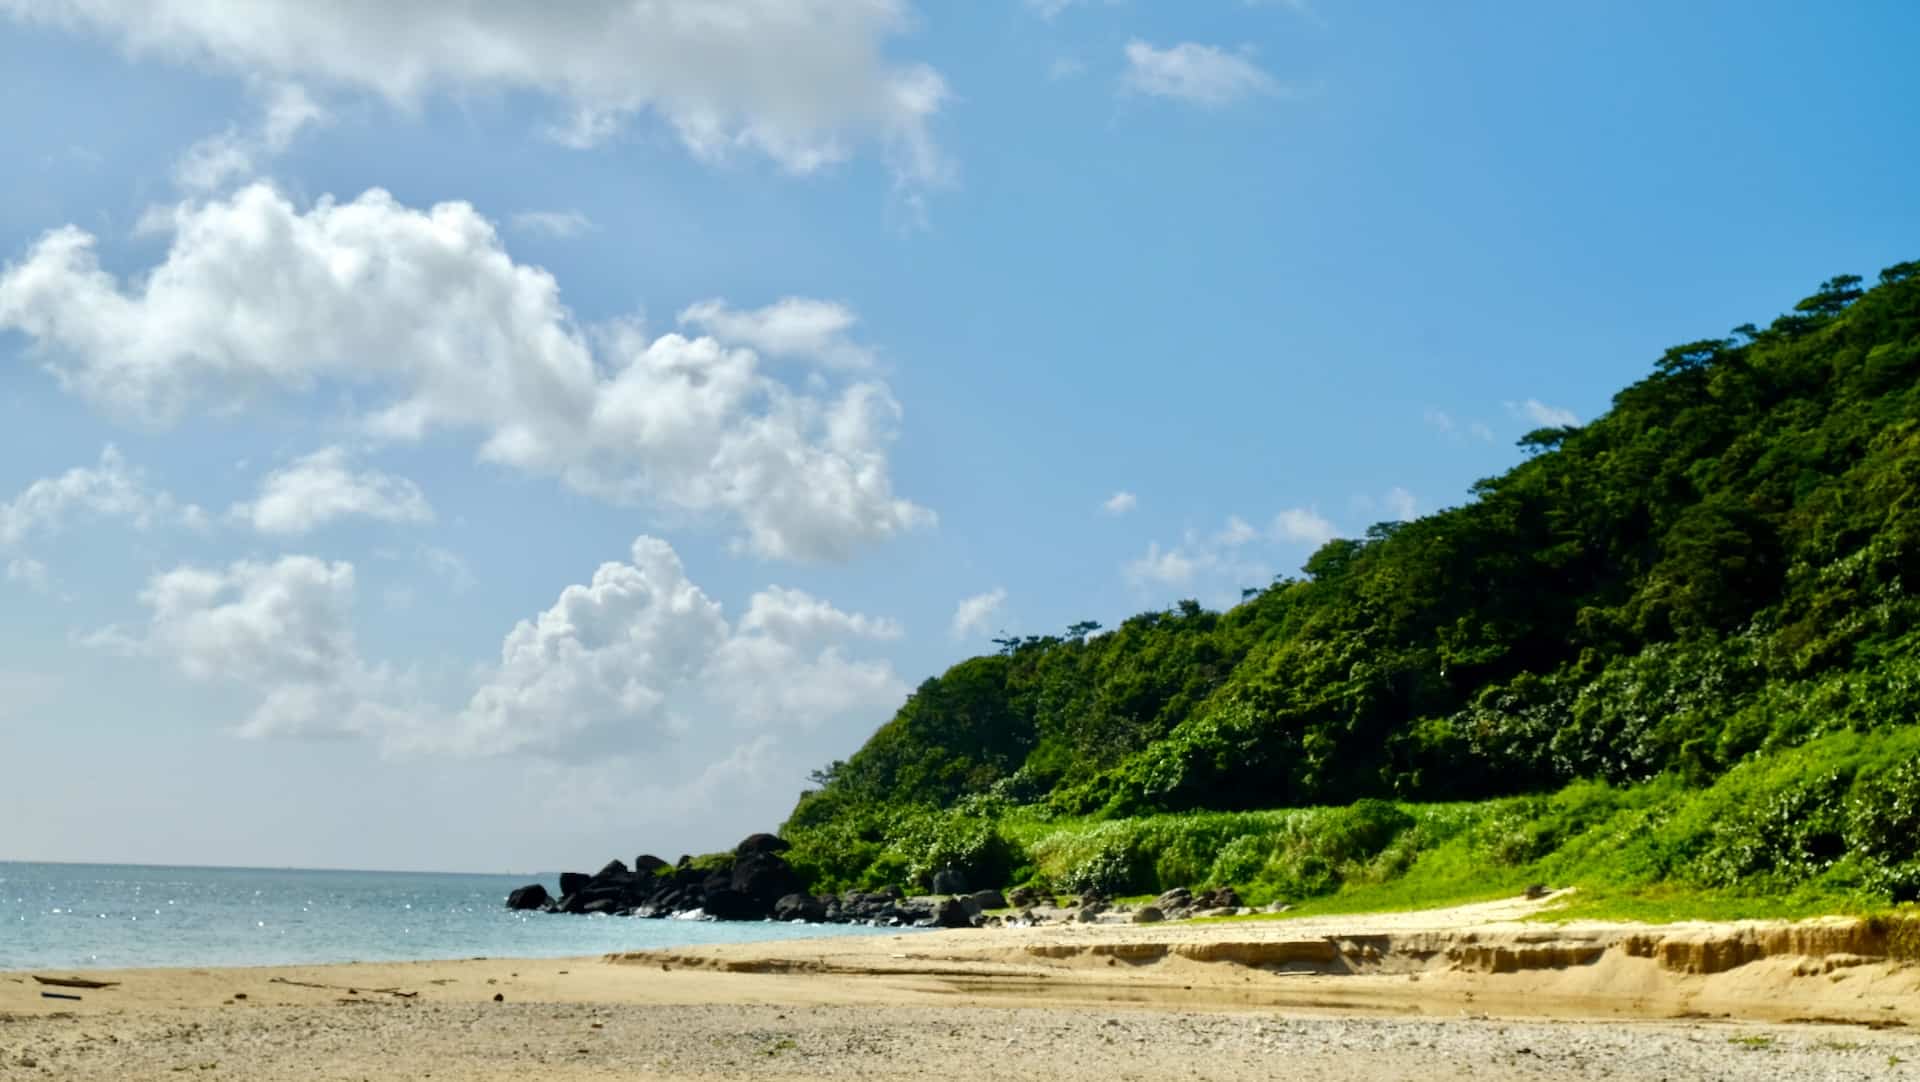 Plages d’Okinawa : quelles sont les plus belles plages ?